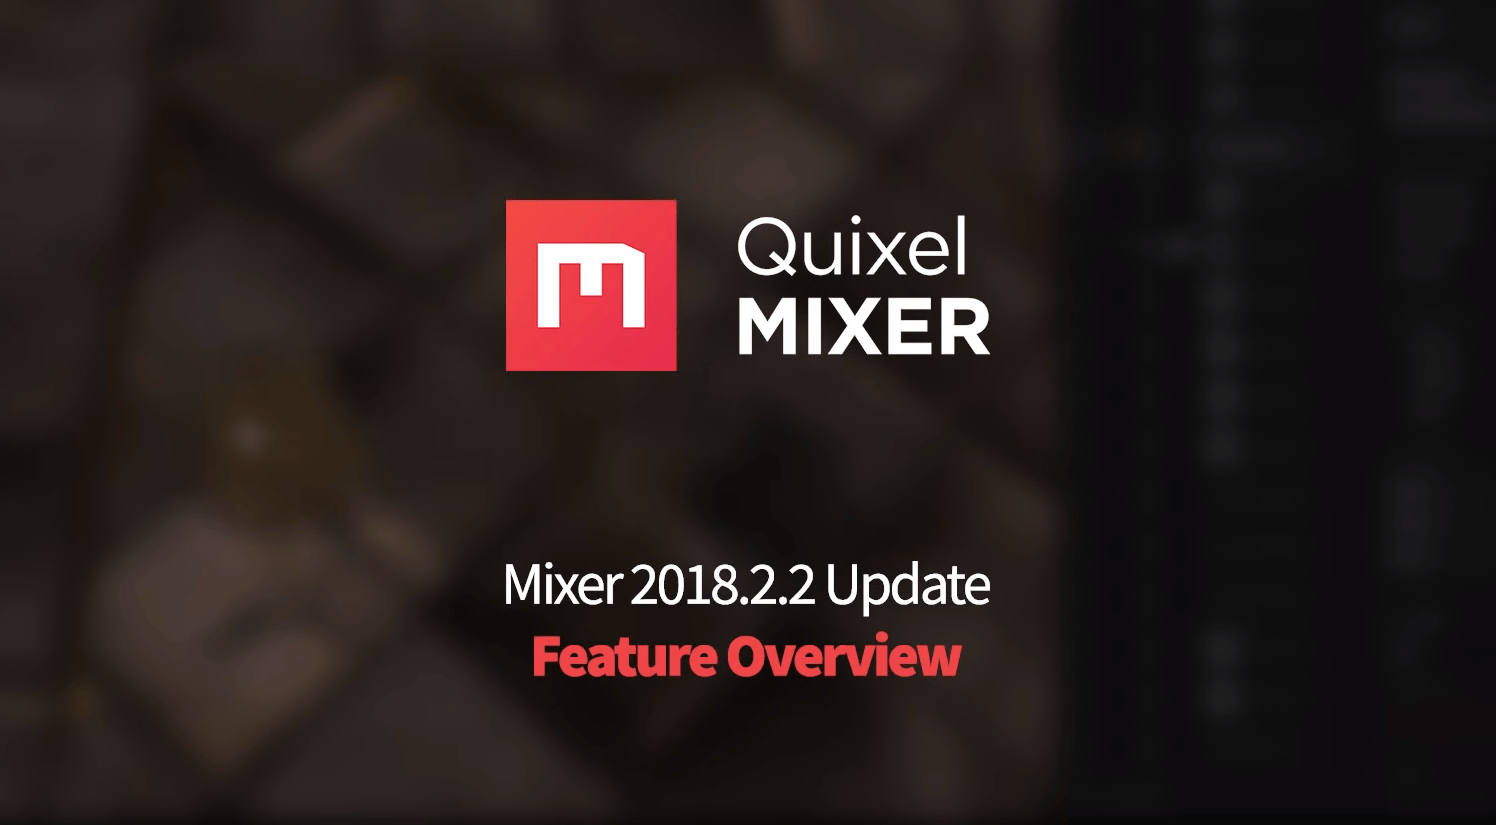 quixel mixer roadmap